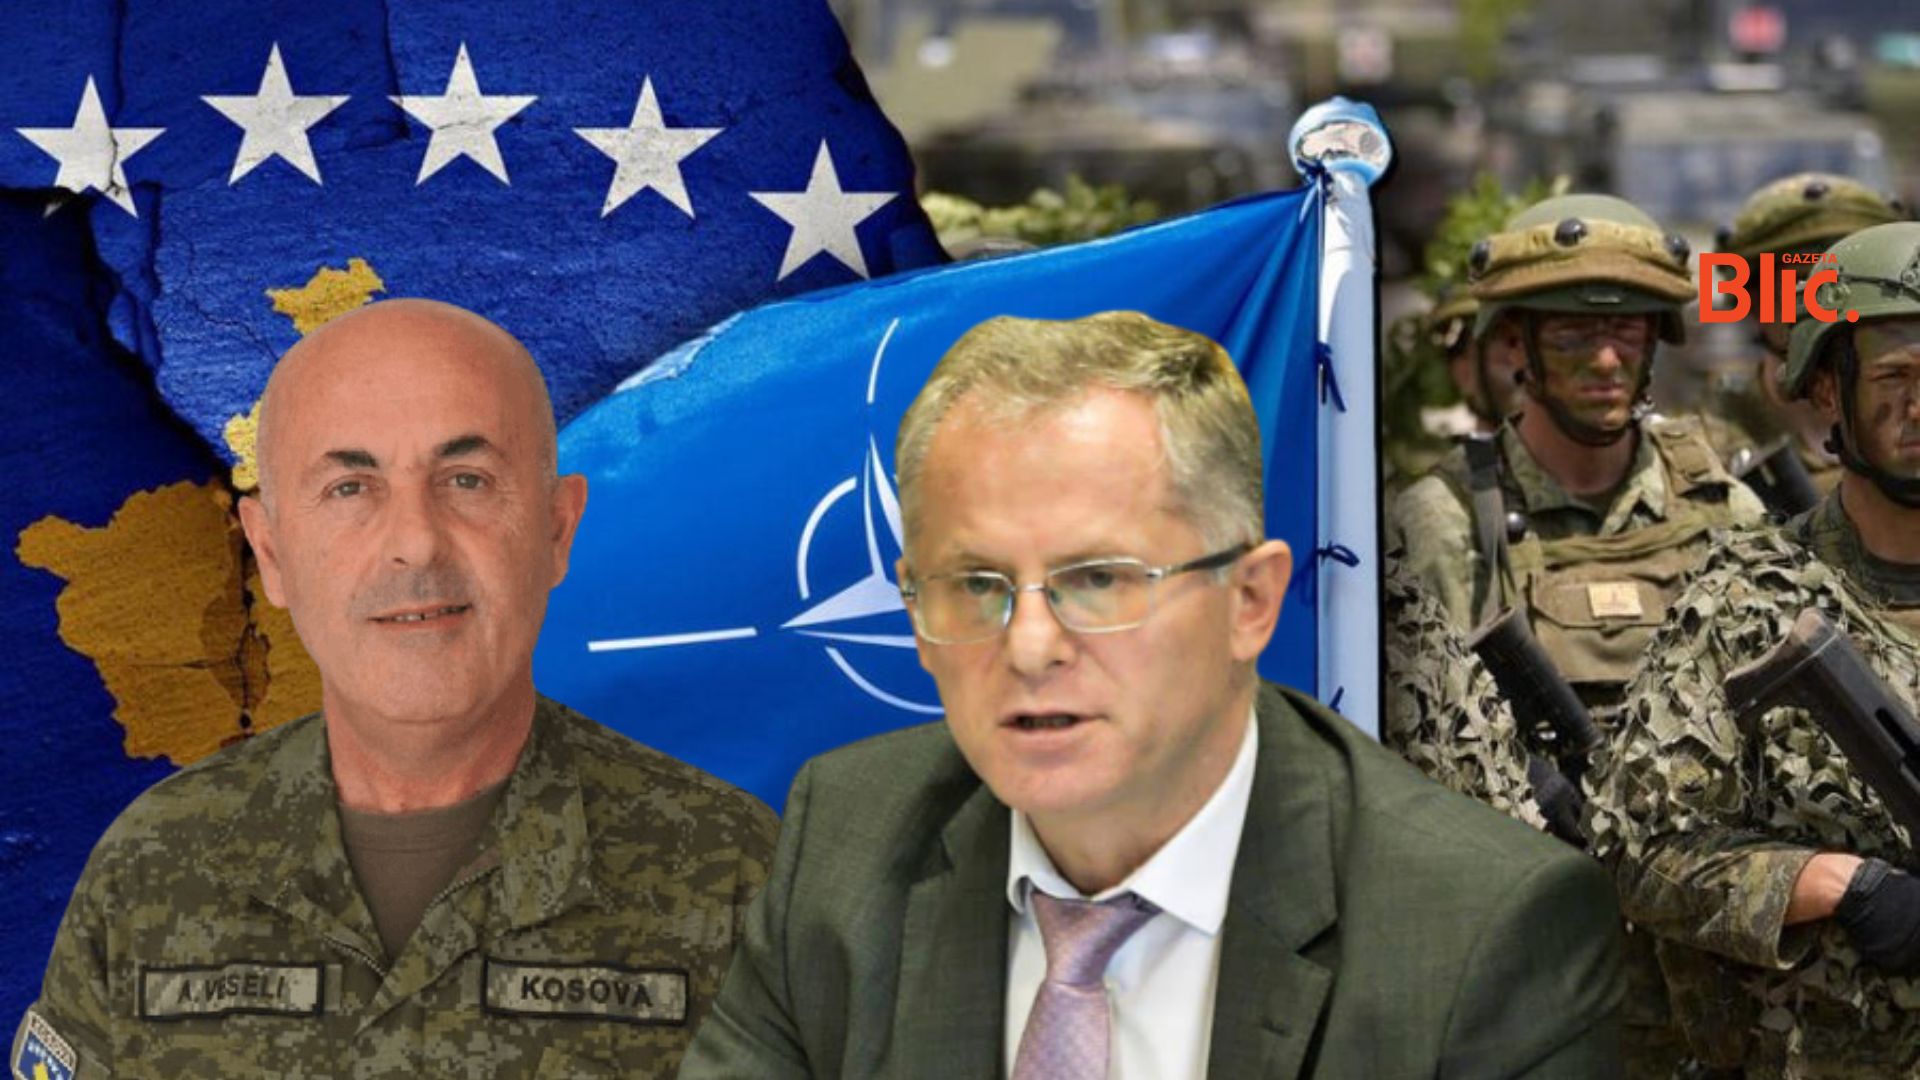 “S’ka luftë në Kosovë, të mos krijohet panik” – Ish koloneli i FSK-së mesazh atyre që duan luftë